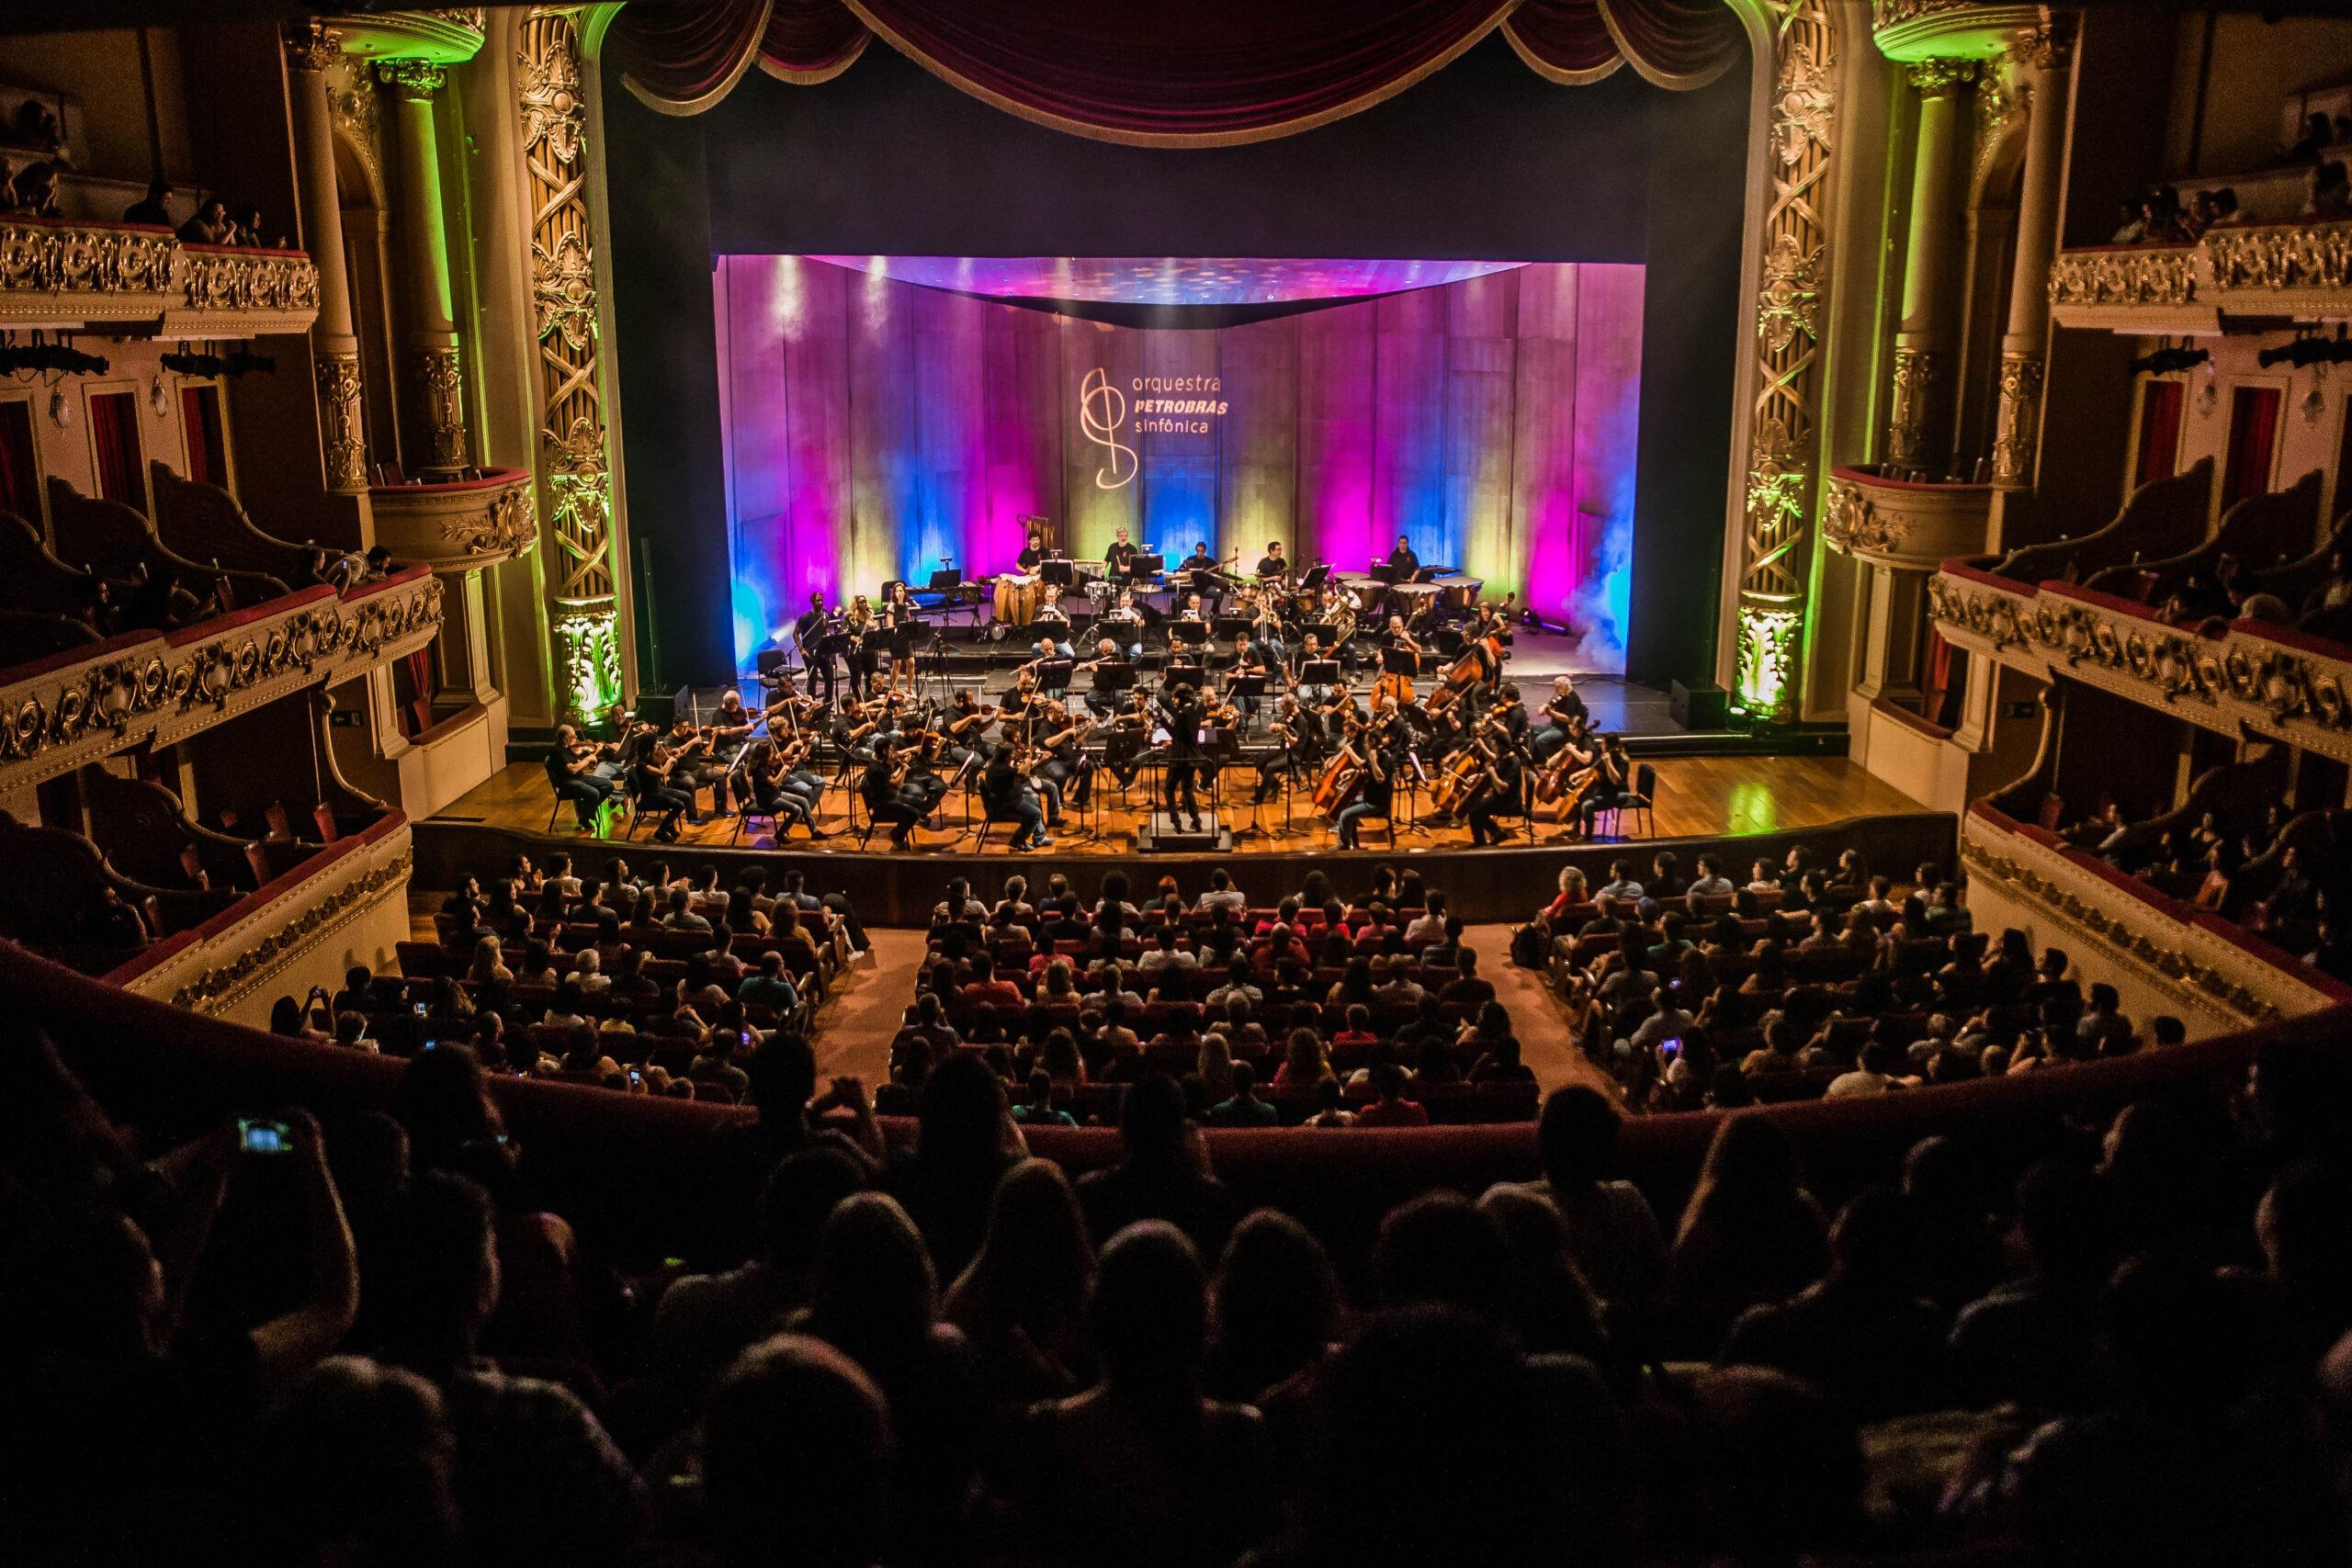 Orquestra Petrobras Sinfônica convida para uma noite épica com “Thriller Sinfônico” e “Legião Sinfônico”